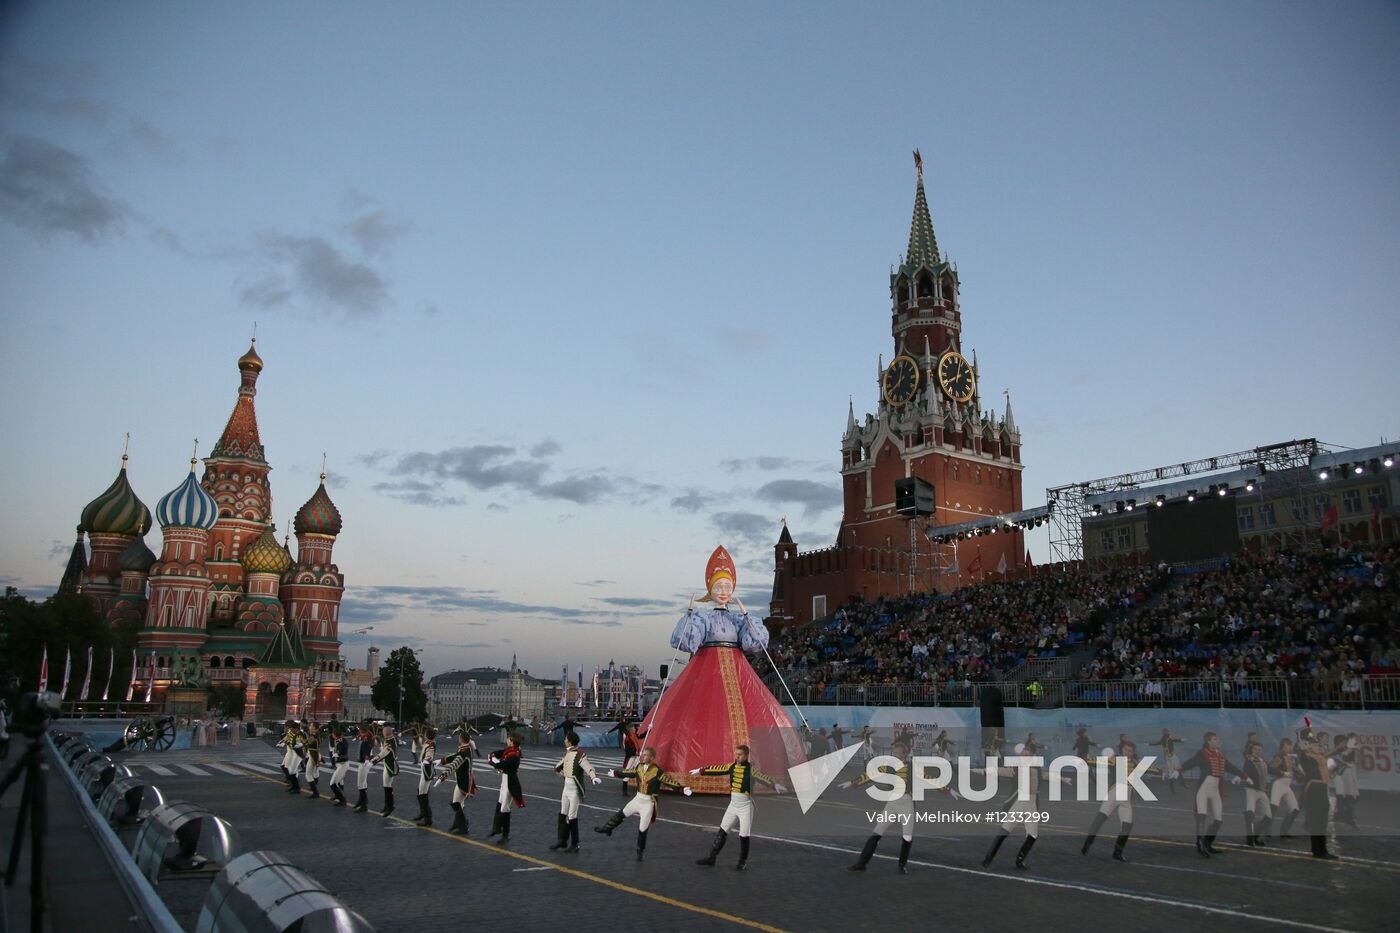 Spasskaya Tower festival closing